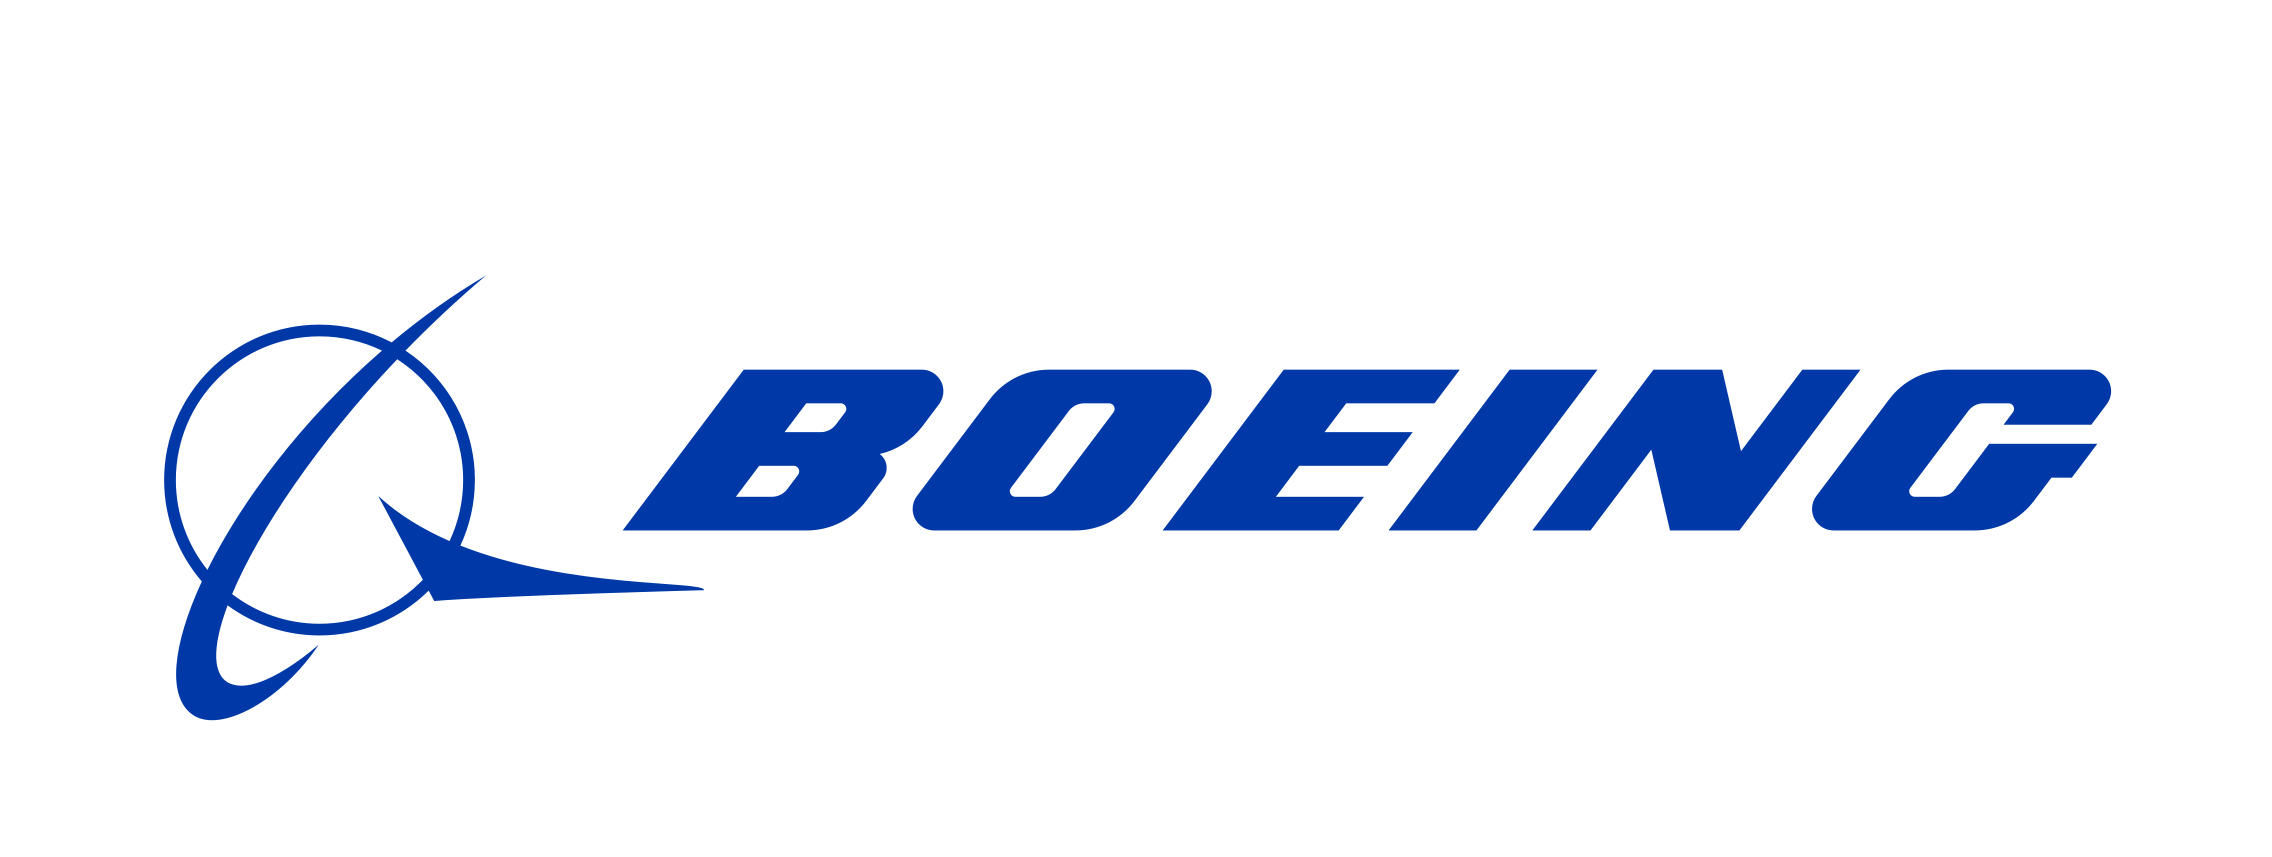 Boeing realiza una de las adquisiciones en Automatización industrial con mayor importe: 3.200 millones de dólares